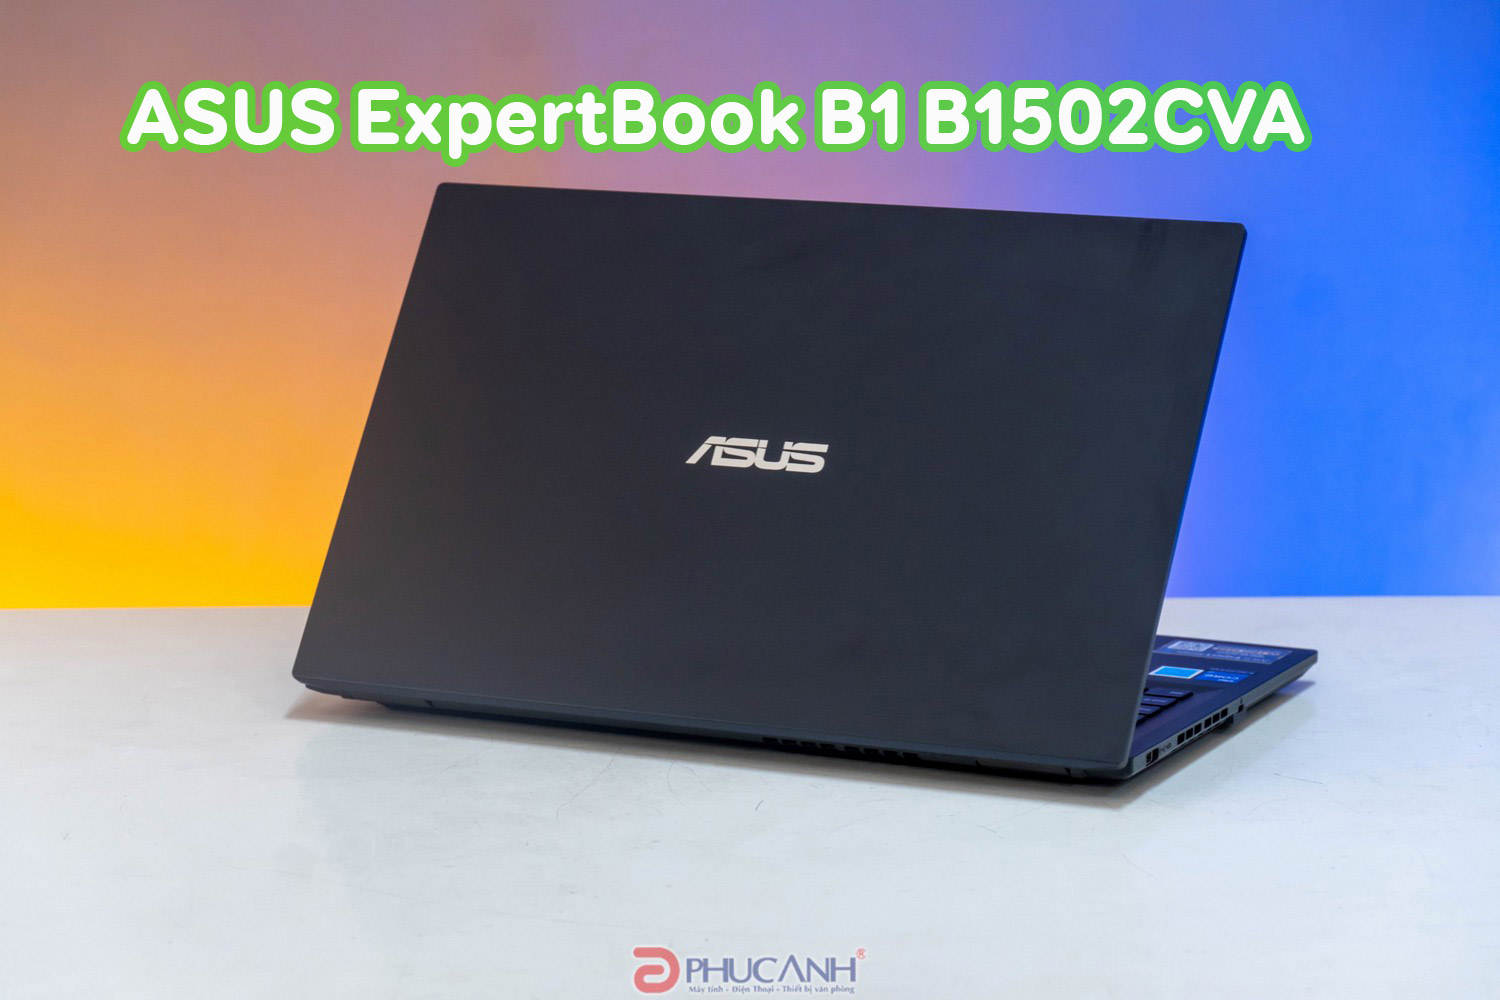 Đánh giá ASUS ExpertBook B1 B1502CVA - Thiết kế tinh tế, bền bỉ, hiệu suất ấn tượng với CPU Intel Raptor Lake